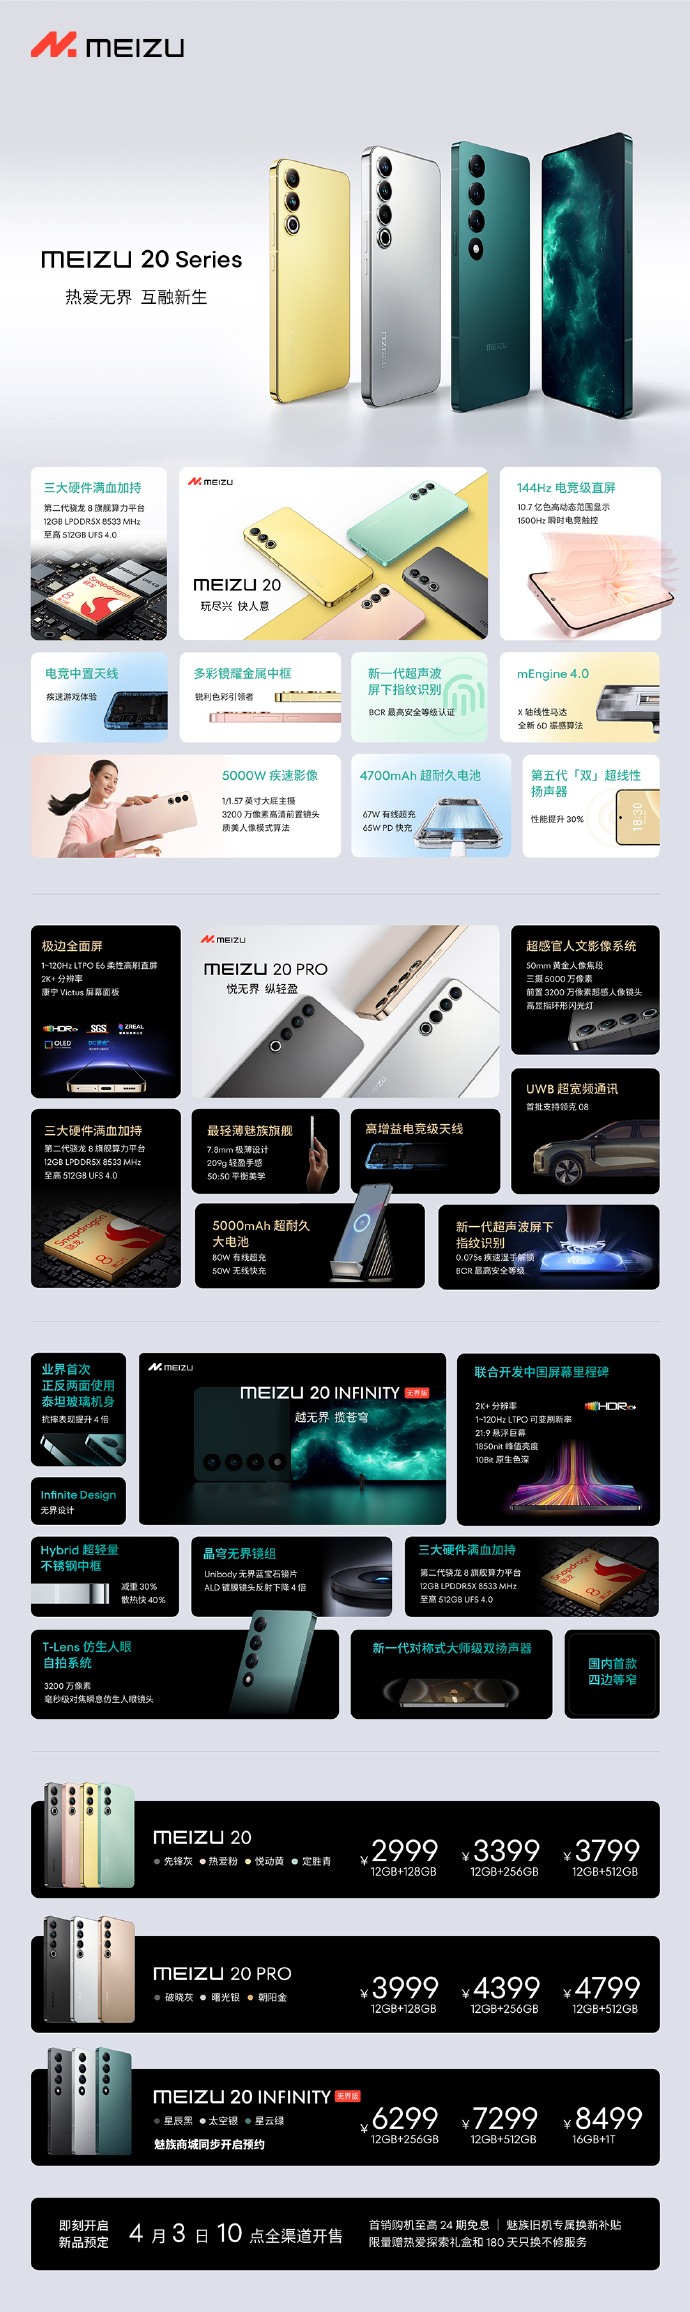 Meizu 20 Pro cena specyfikacja techniczna